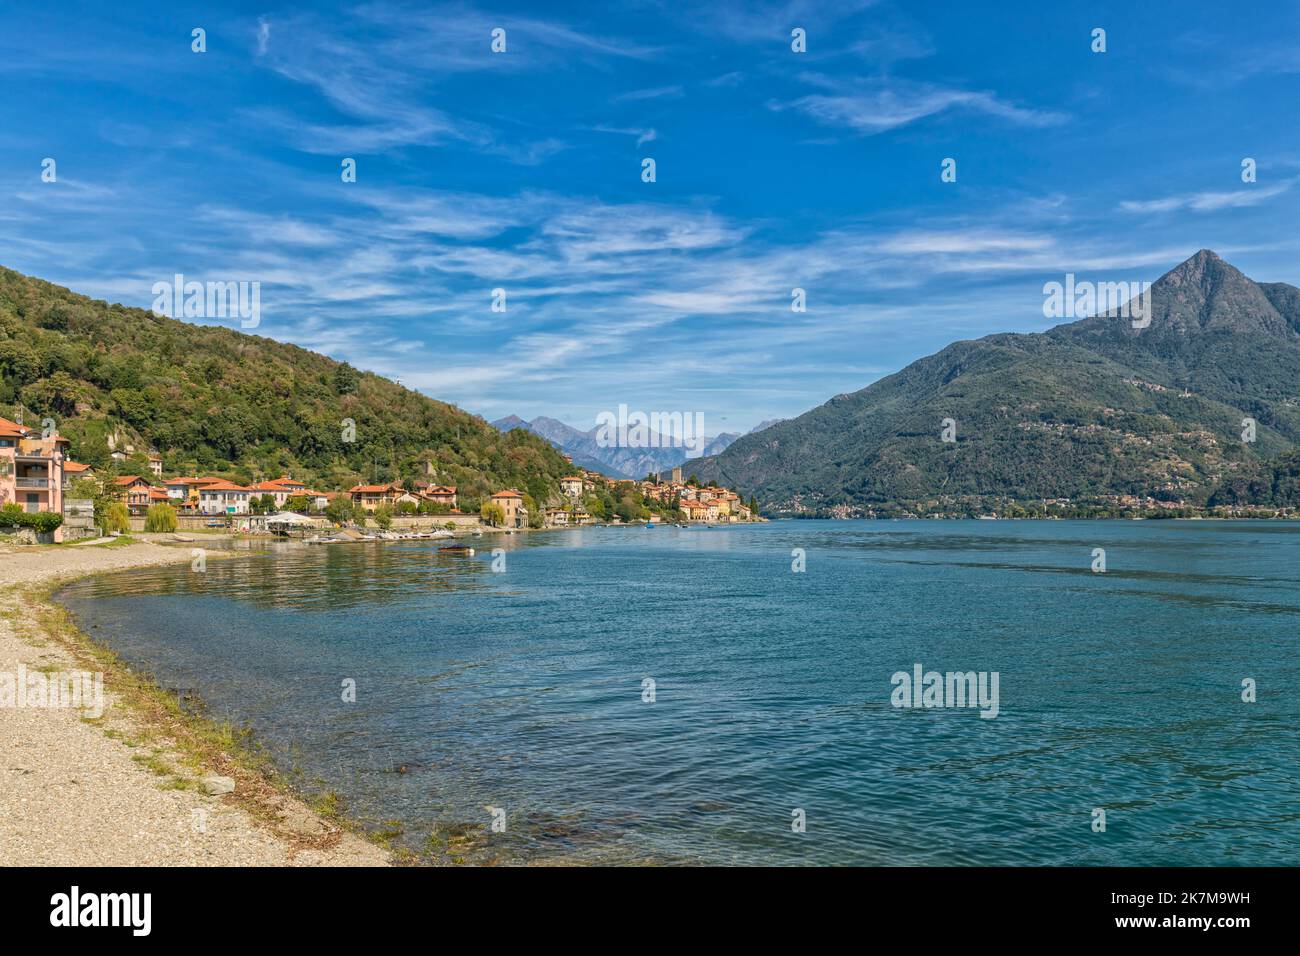 Santa Maria Rezzonico, lago occidental del Lago di Como, vista desde Santa Maria, montañas alpinas en el fondo Foto de stock